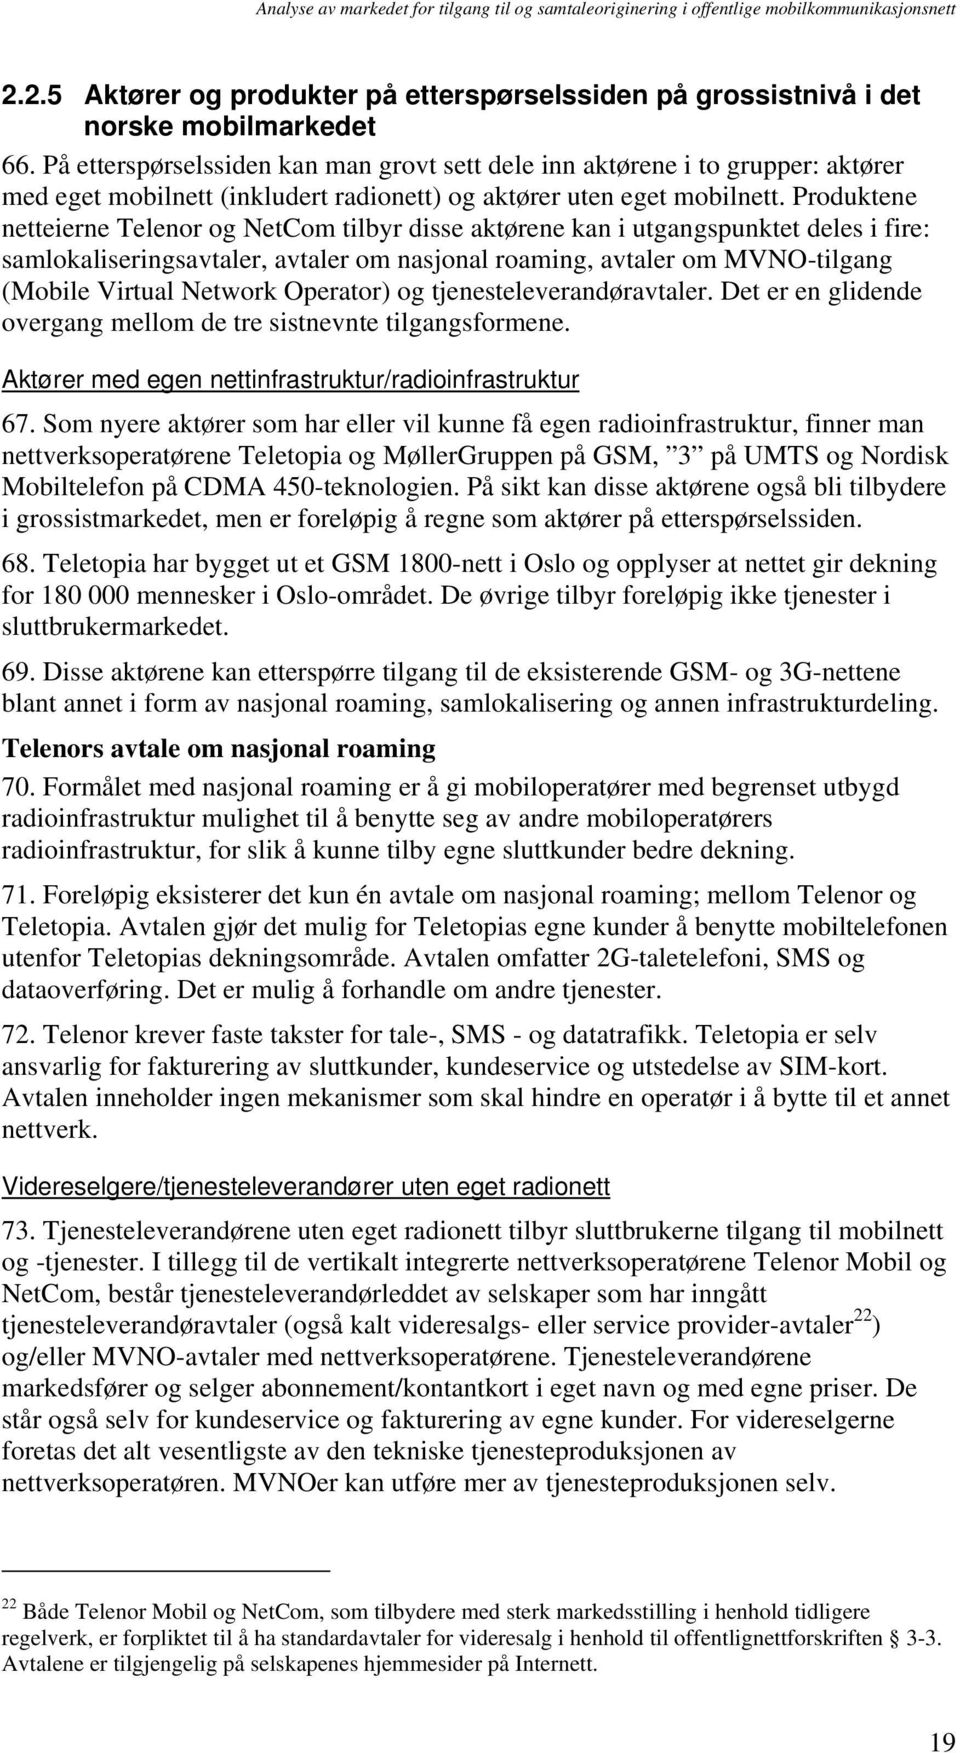 Produktene netteierne Telenor og NetCom tilbyr disse aktørene kan i utgangspunktet deles i fire: samlokaliseringsavtaler, avtaler om nasjonal roaming, avtaler om MVNO-tilgang (Mobile Virtual Network